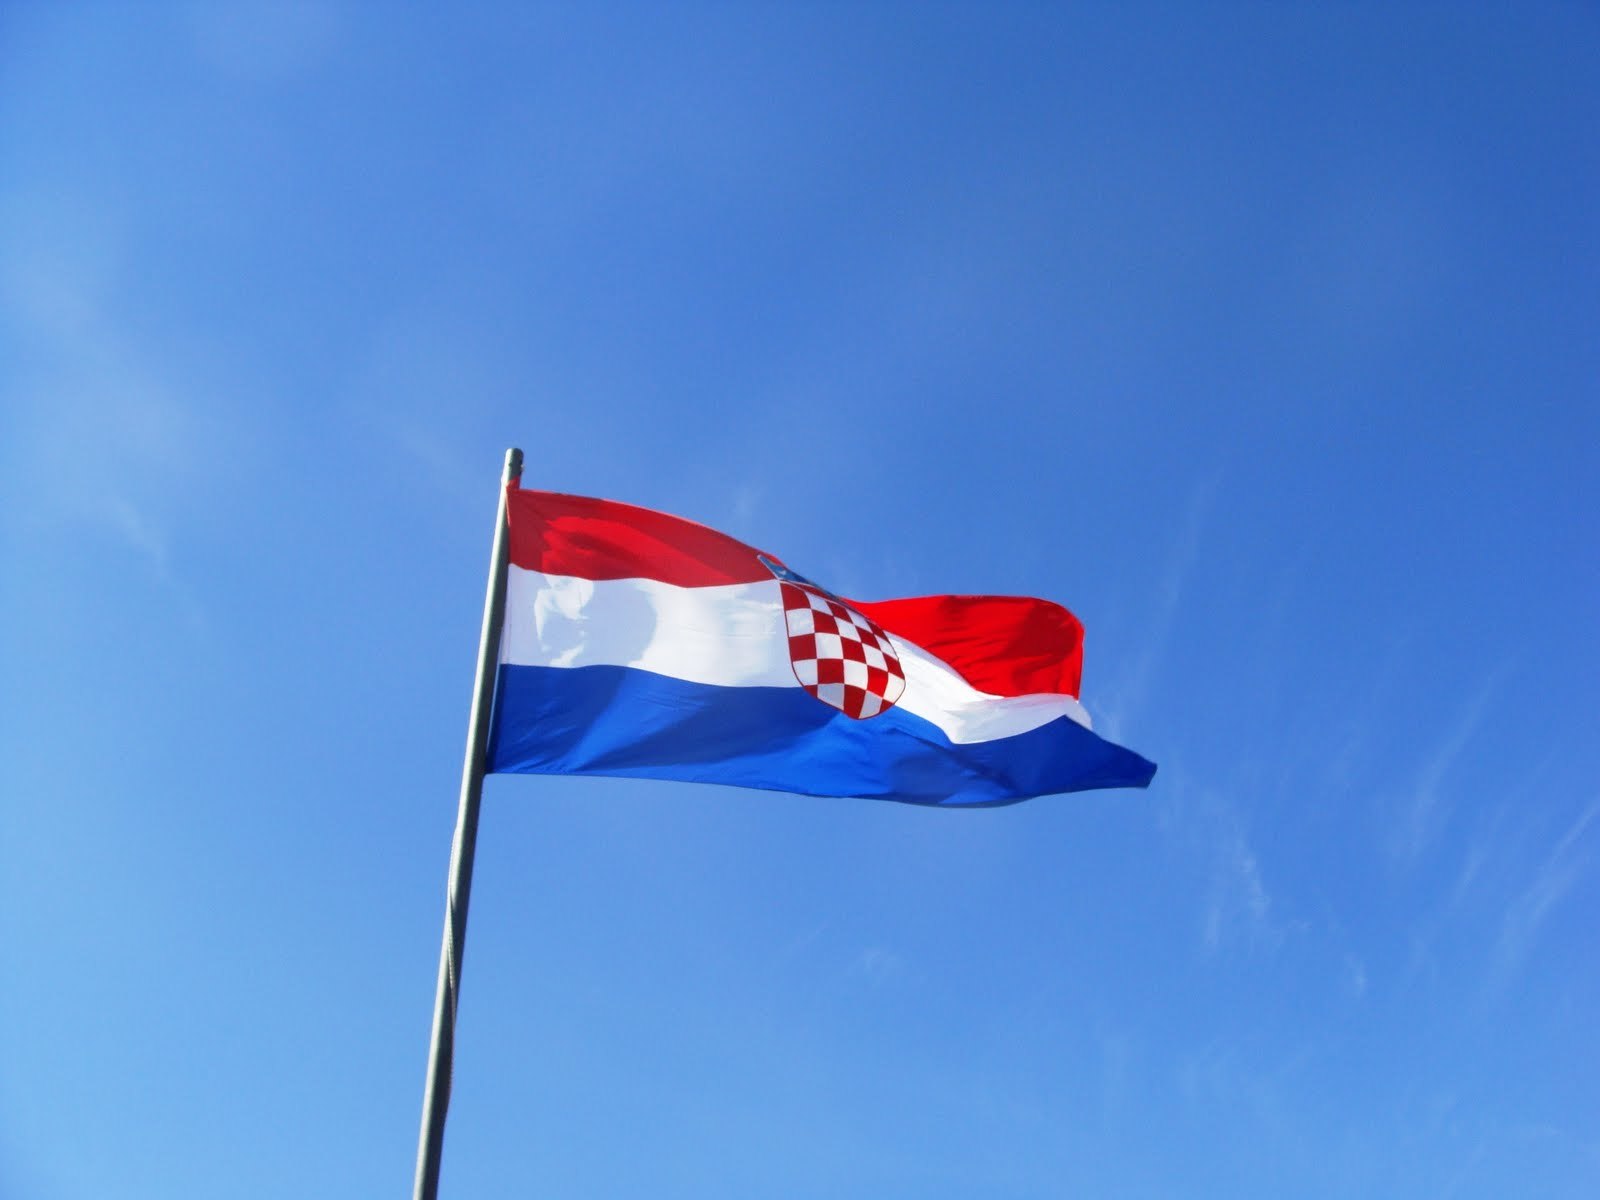 Λιγότεροι άνεργοι τον Απρίλιο στην Κροατία, λόγω εποχικής απασχόλησης στον τουρισμό